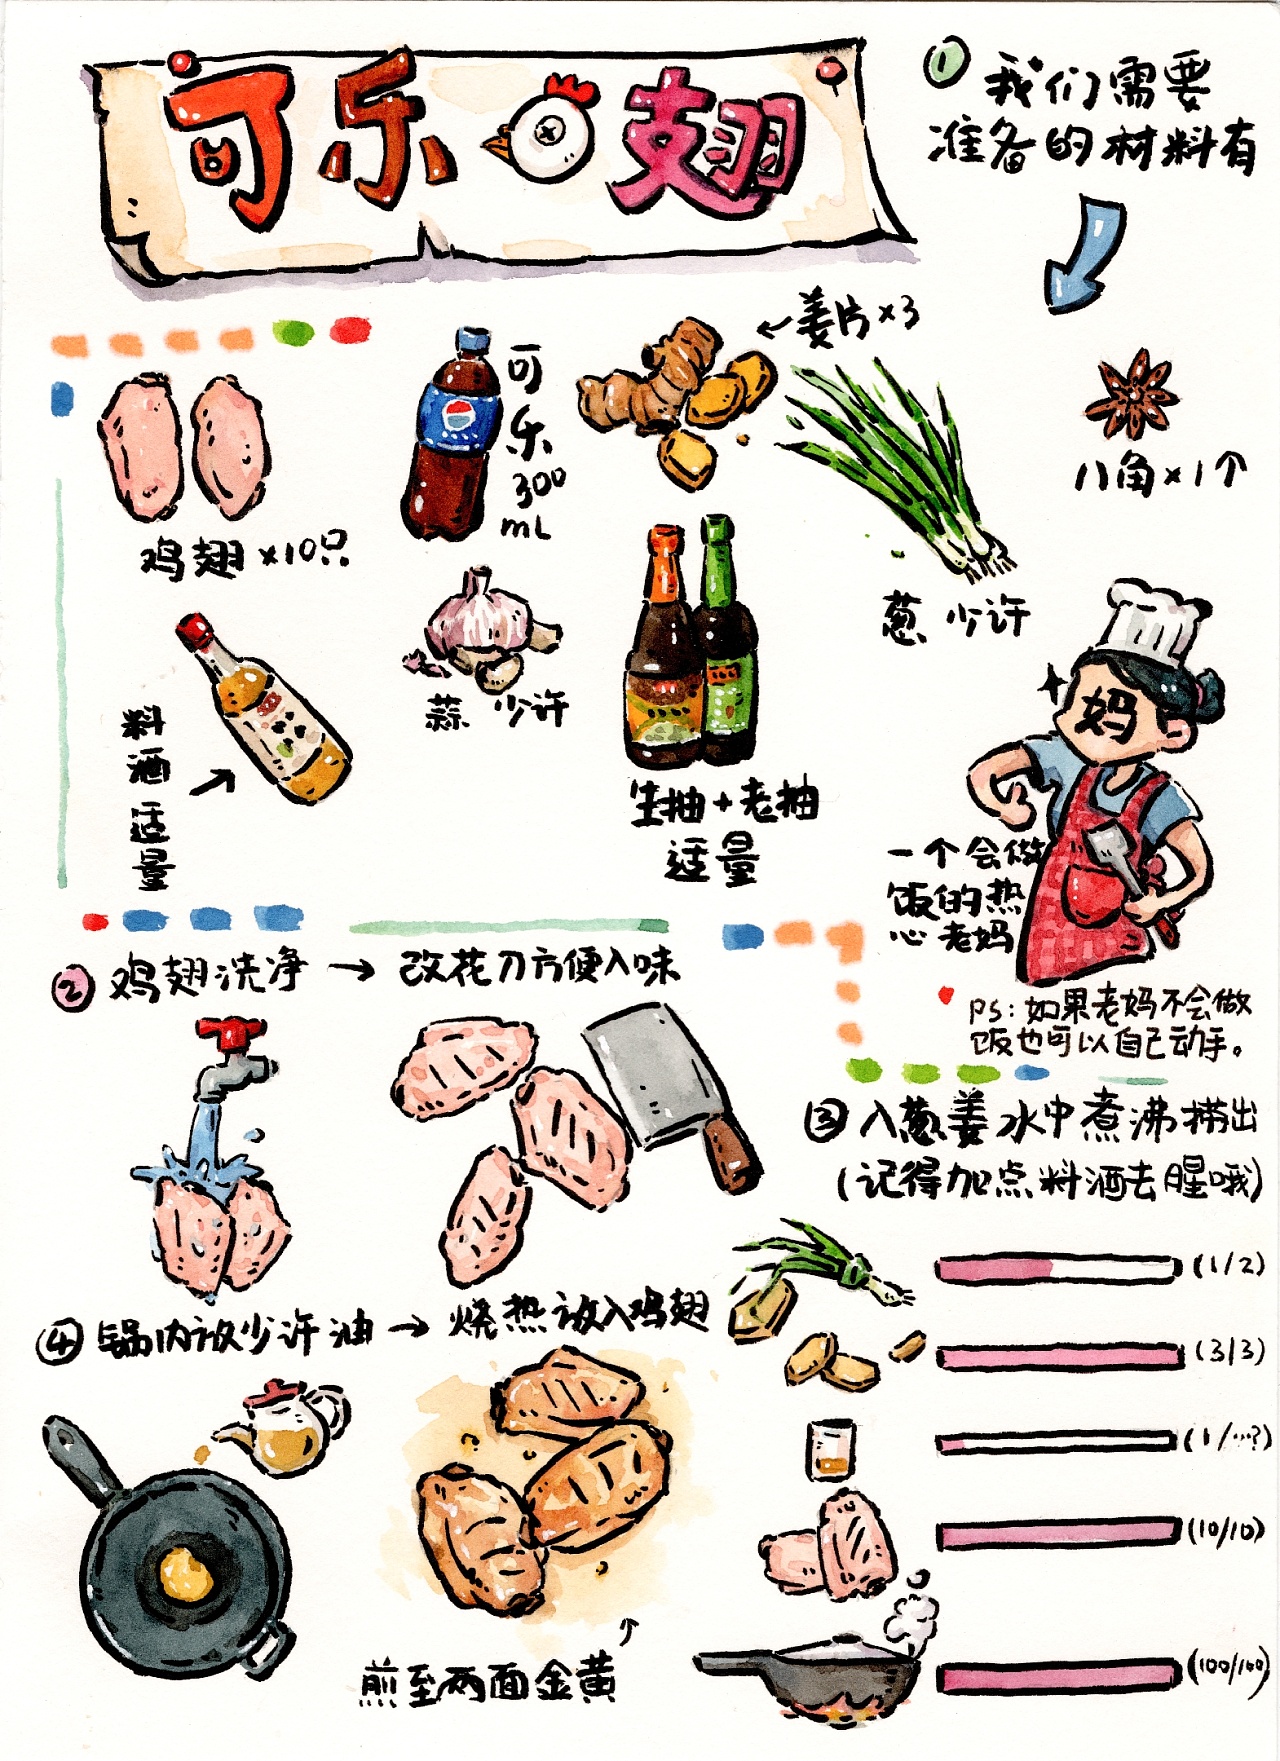 食物制作流程图卡通图片